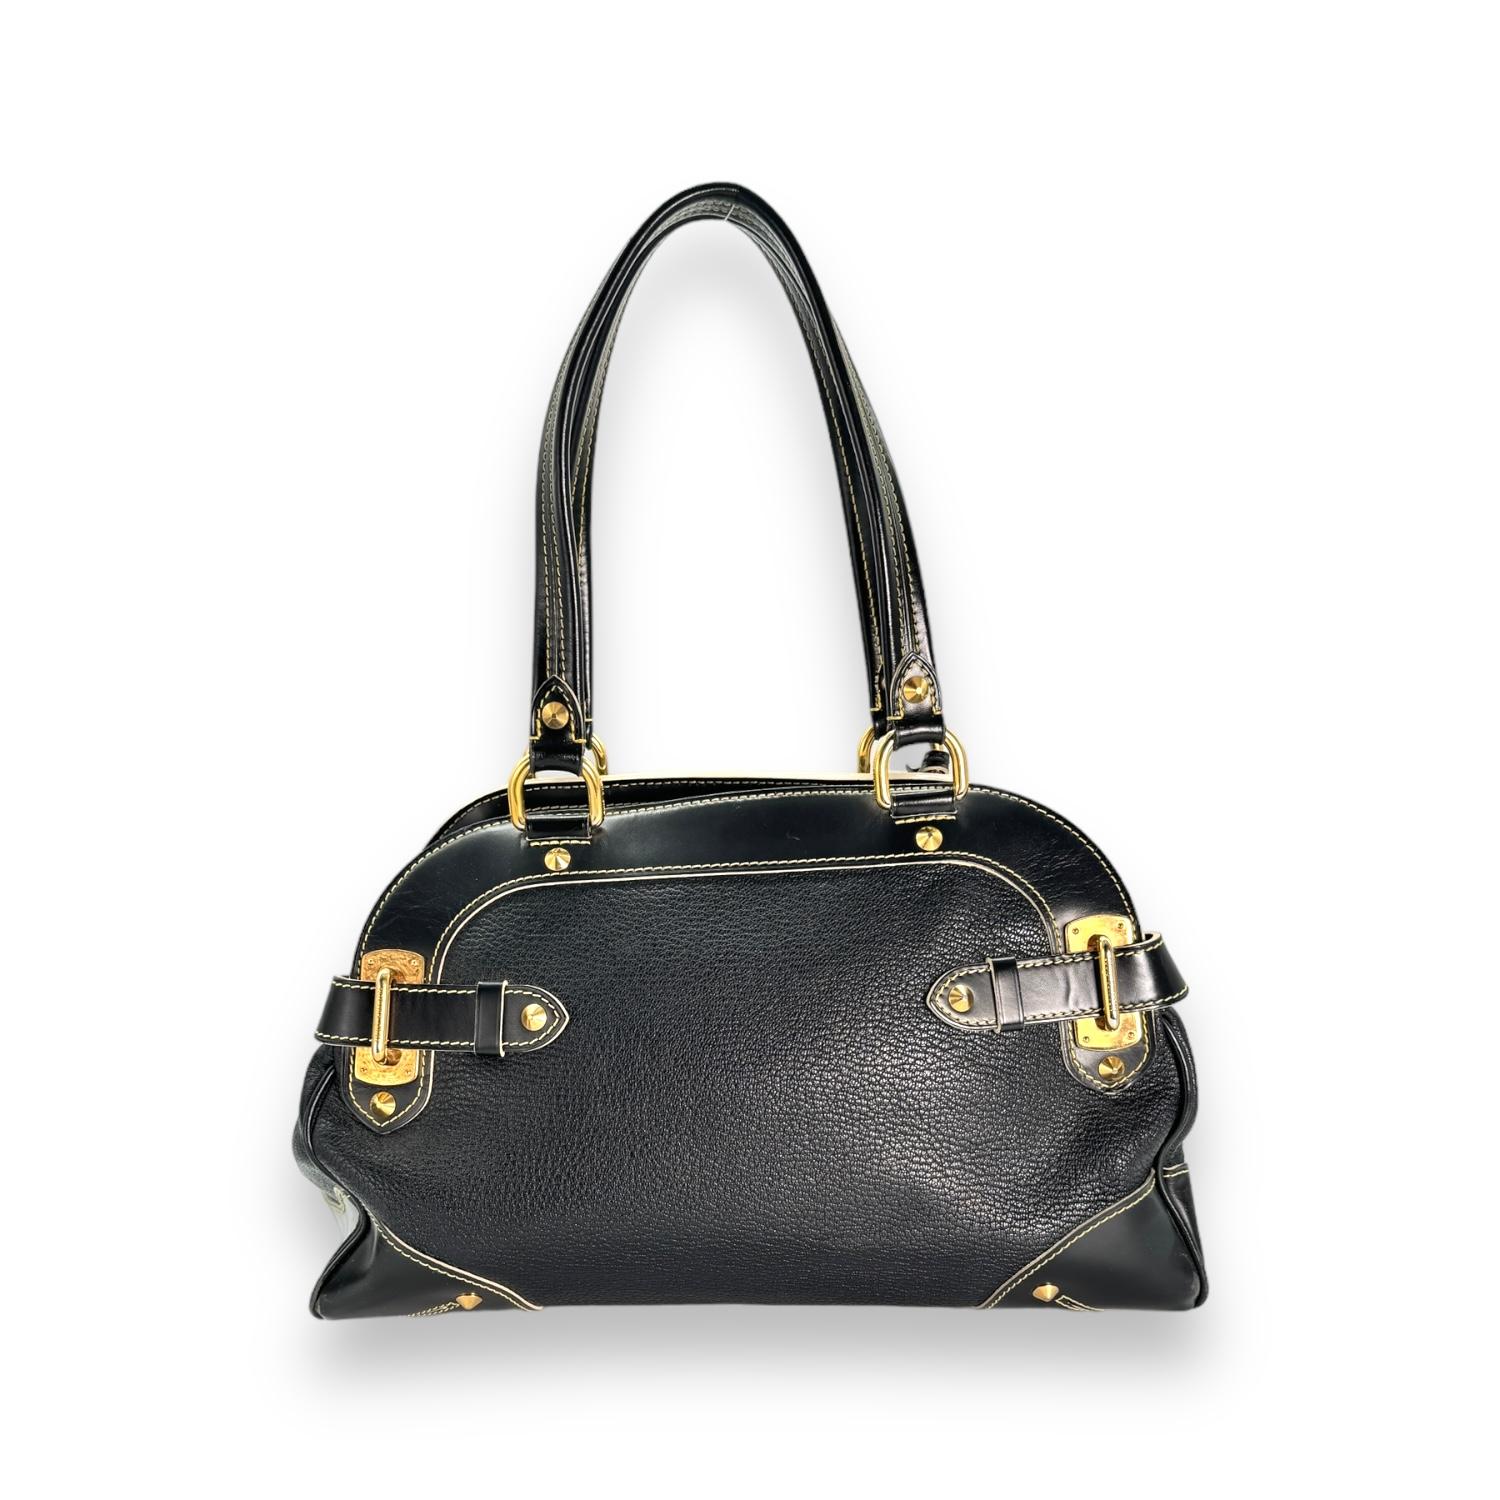 Louis Vuitton 2008 Black Suhali Le Radieux Satchel Bag In Good Condition For Sale In Scottsdale, AZ